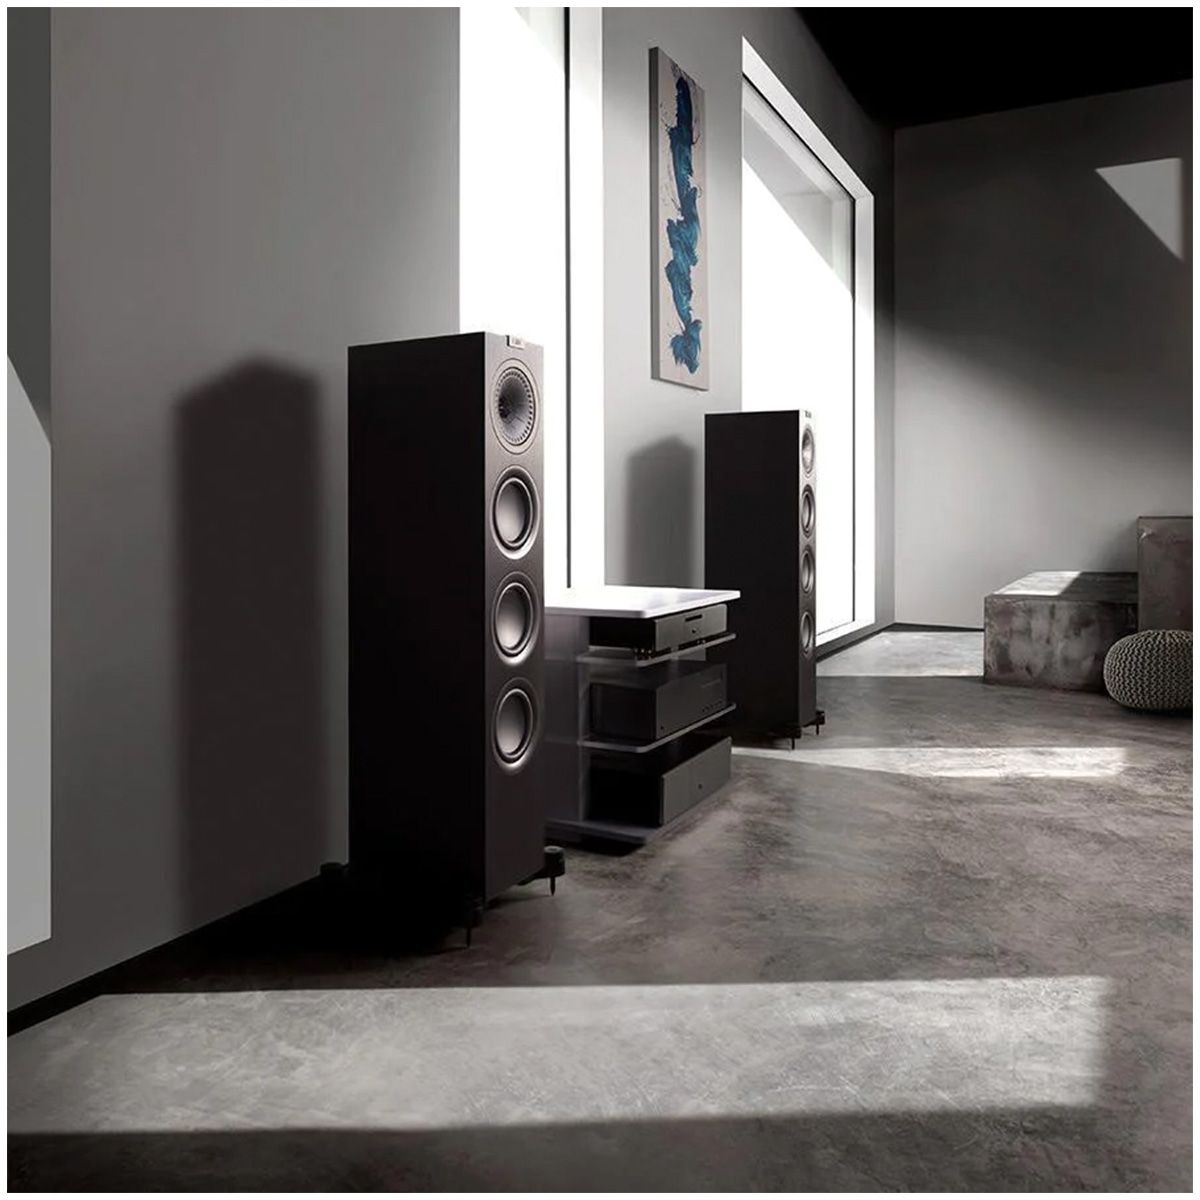 KEF Q750 Floorstanding Speaker - Each